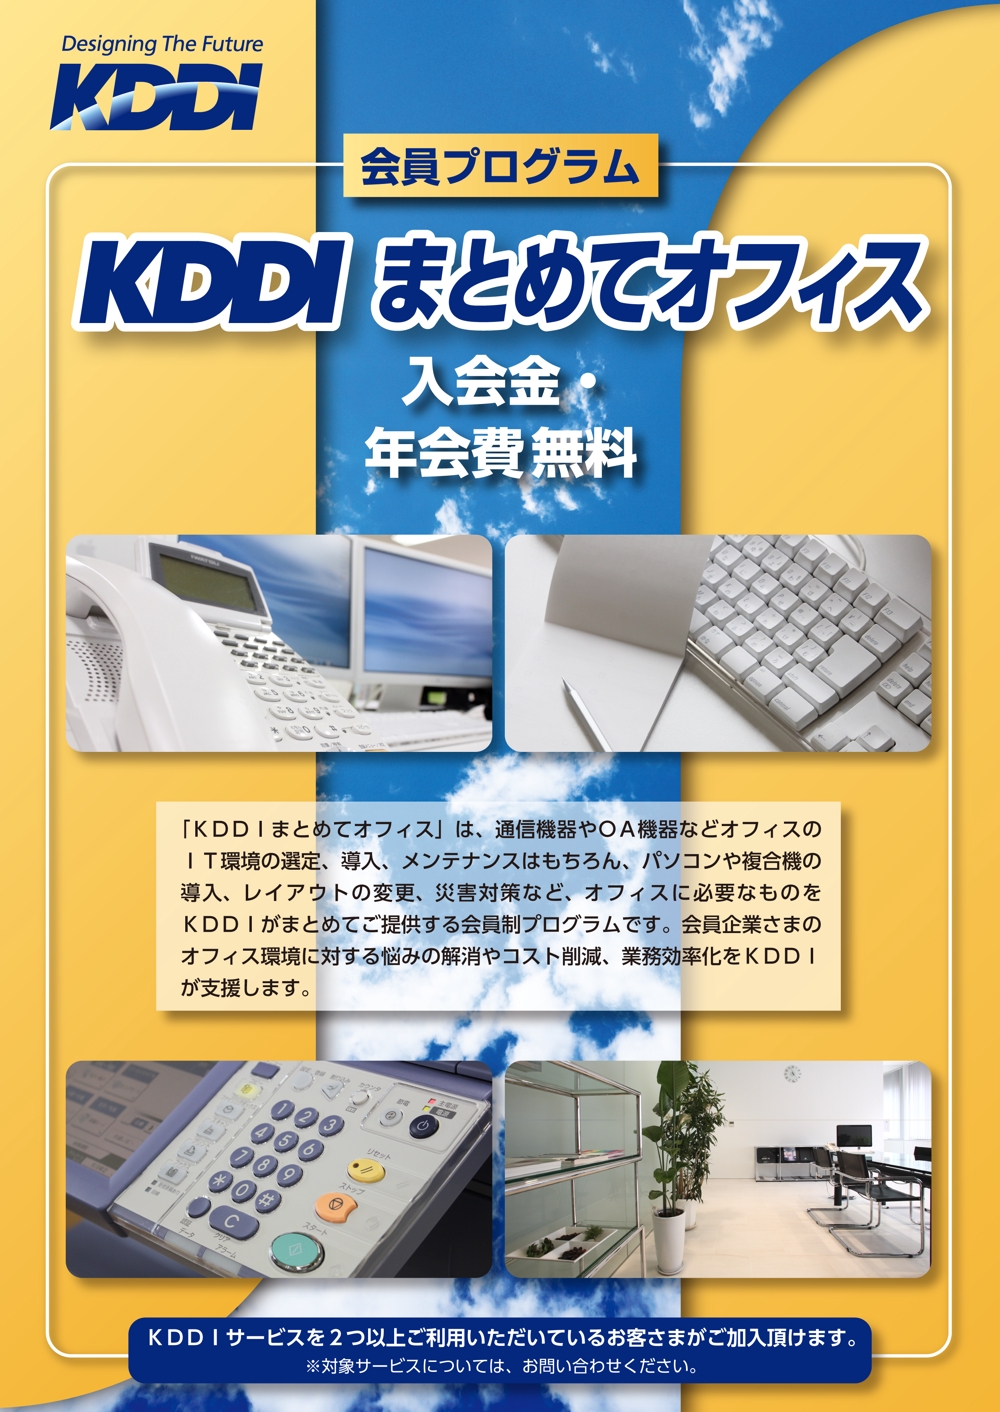 KDDIグループの新フライヤーデザインコンテスト